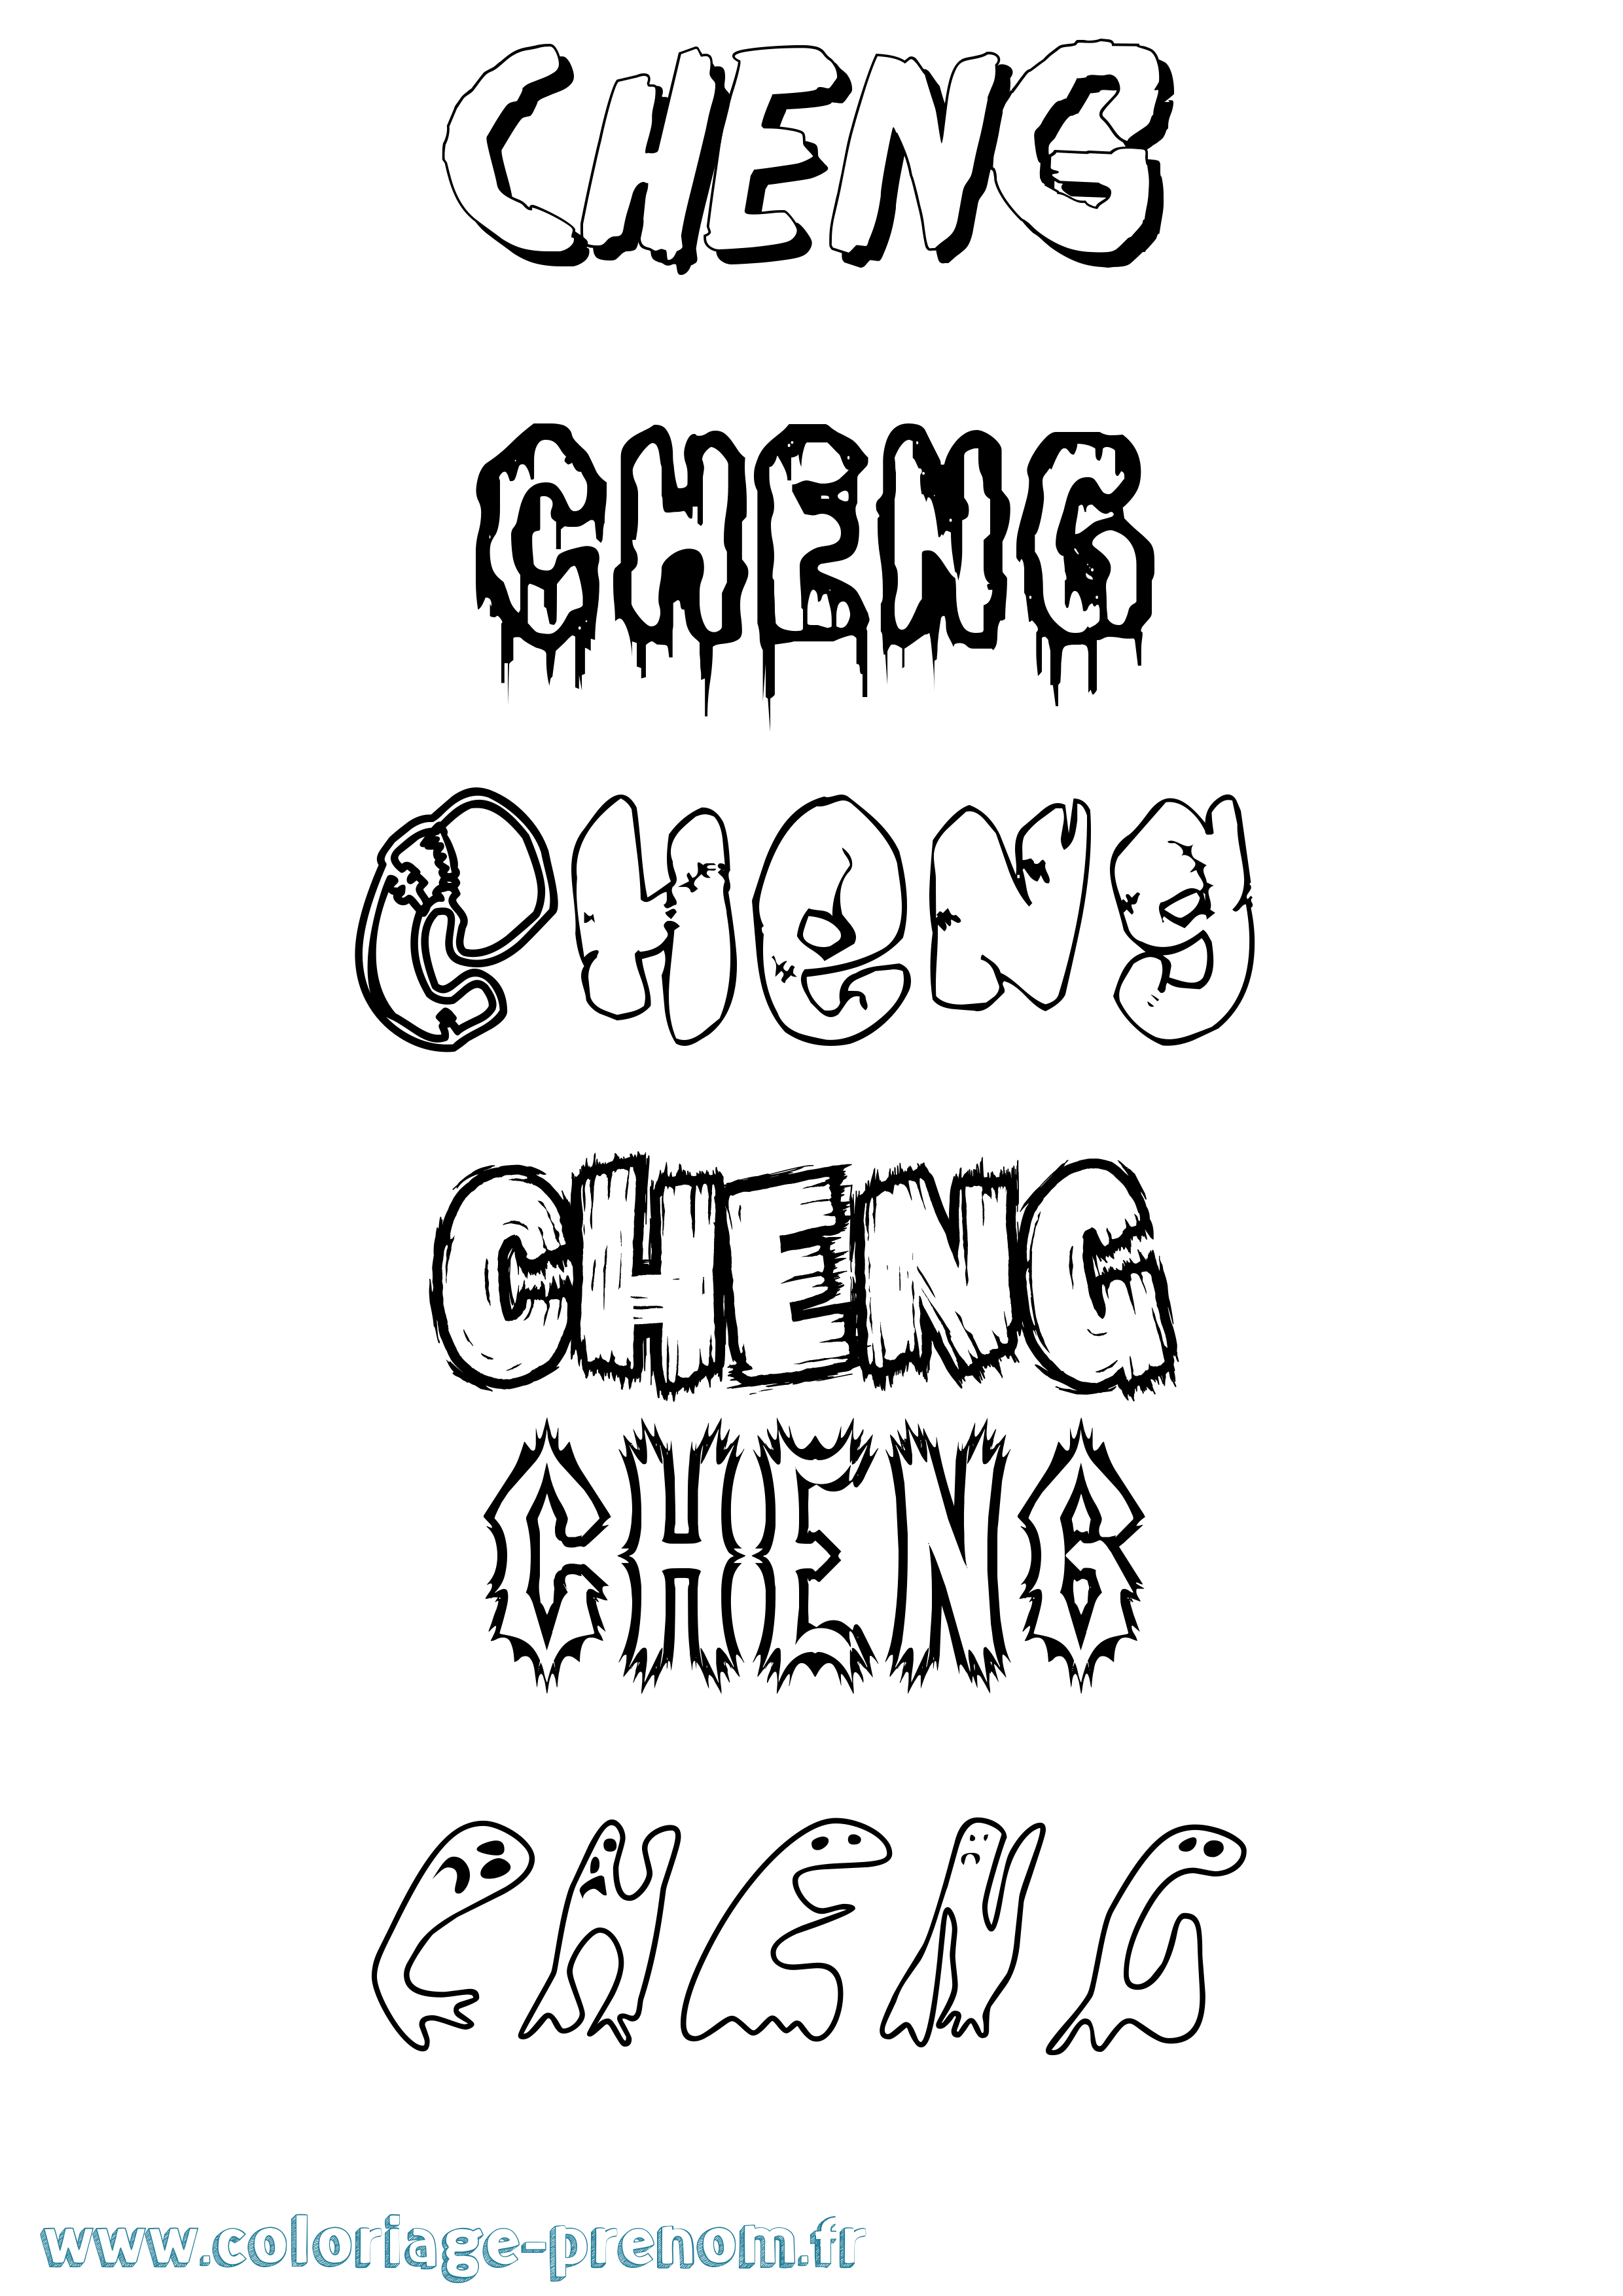 Coloriage prénom Cheng Frisson